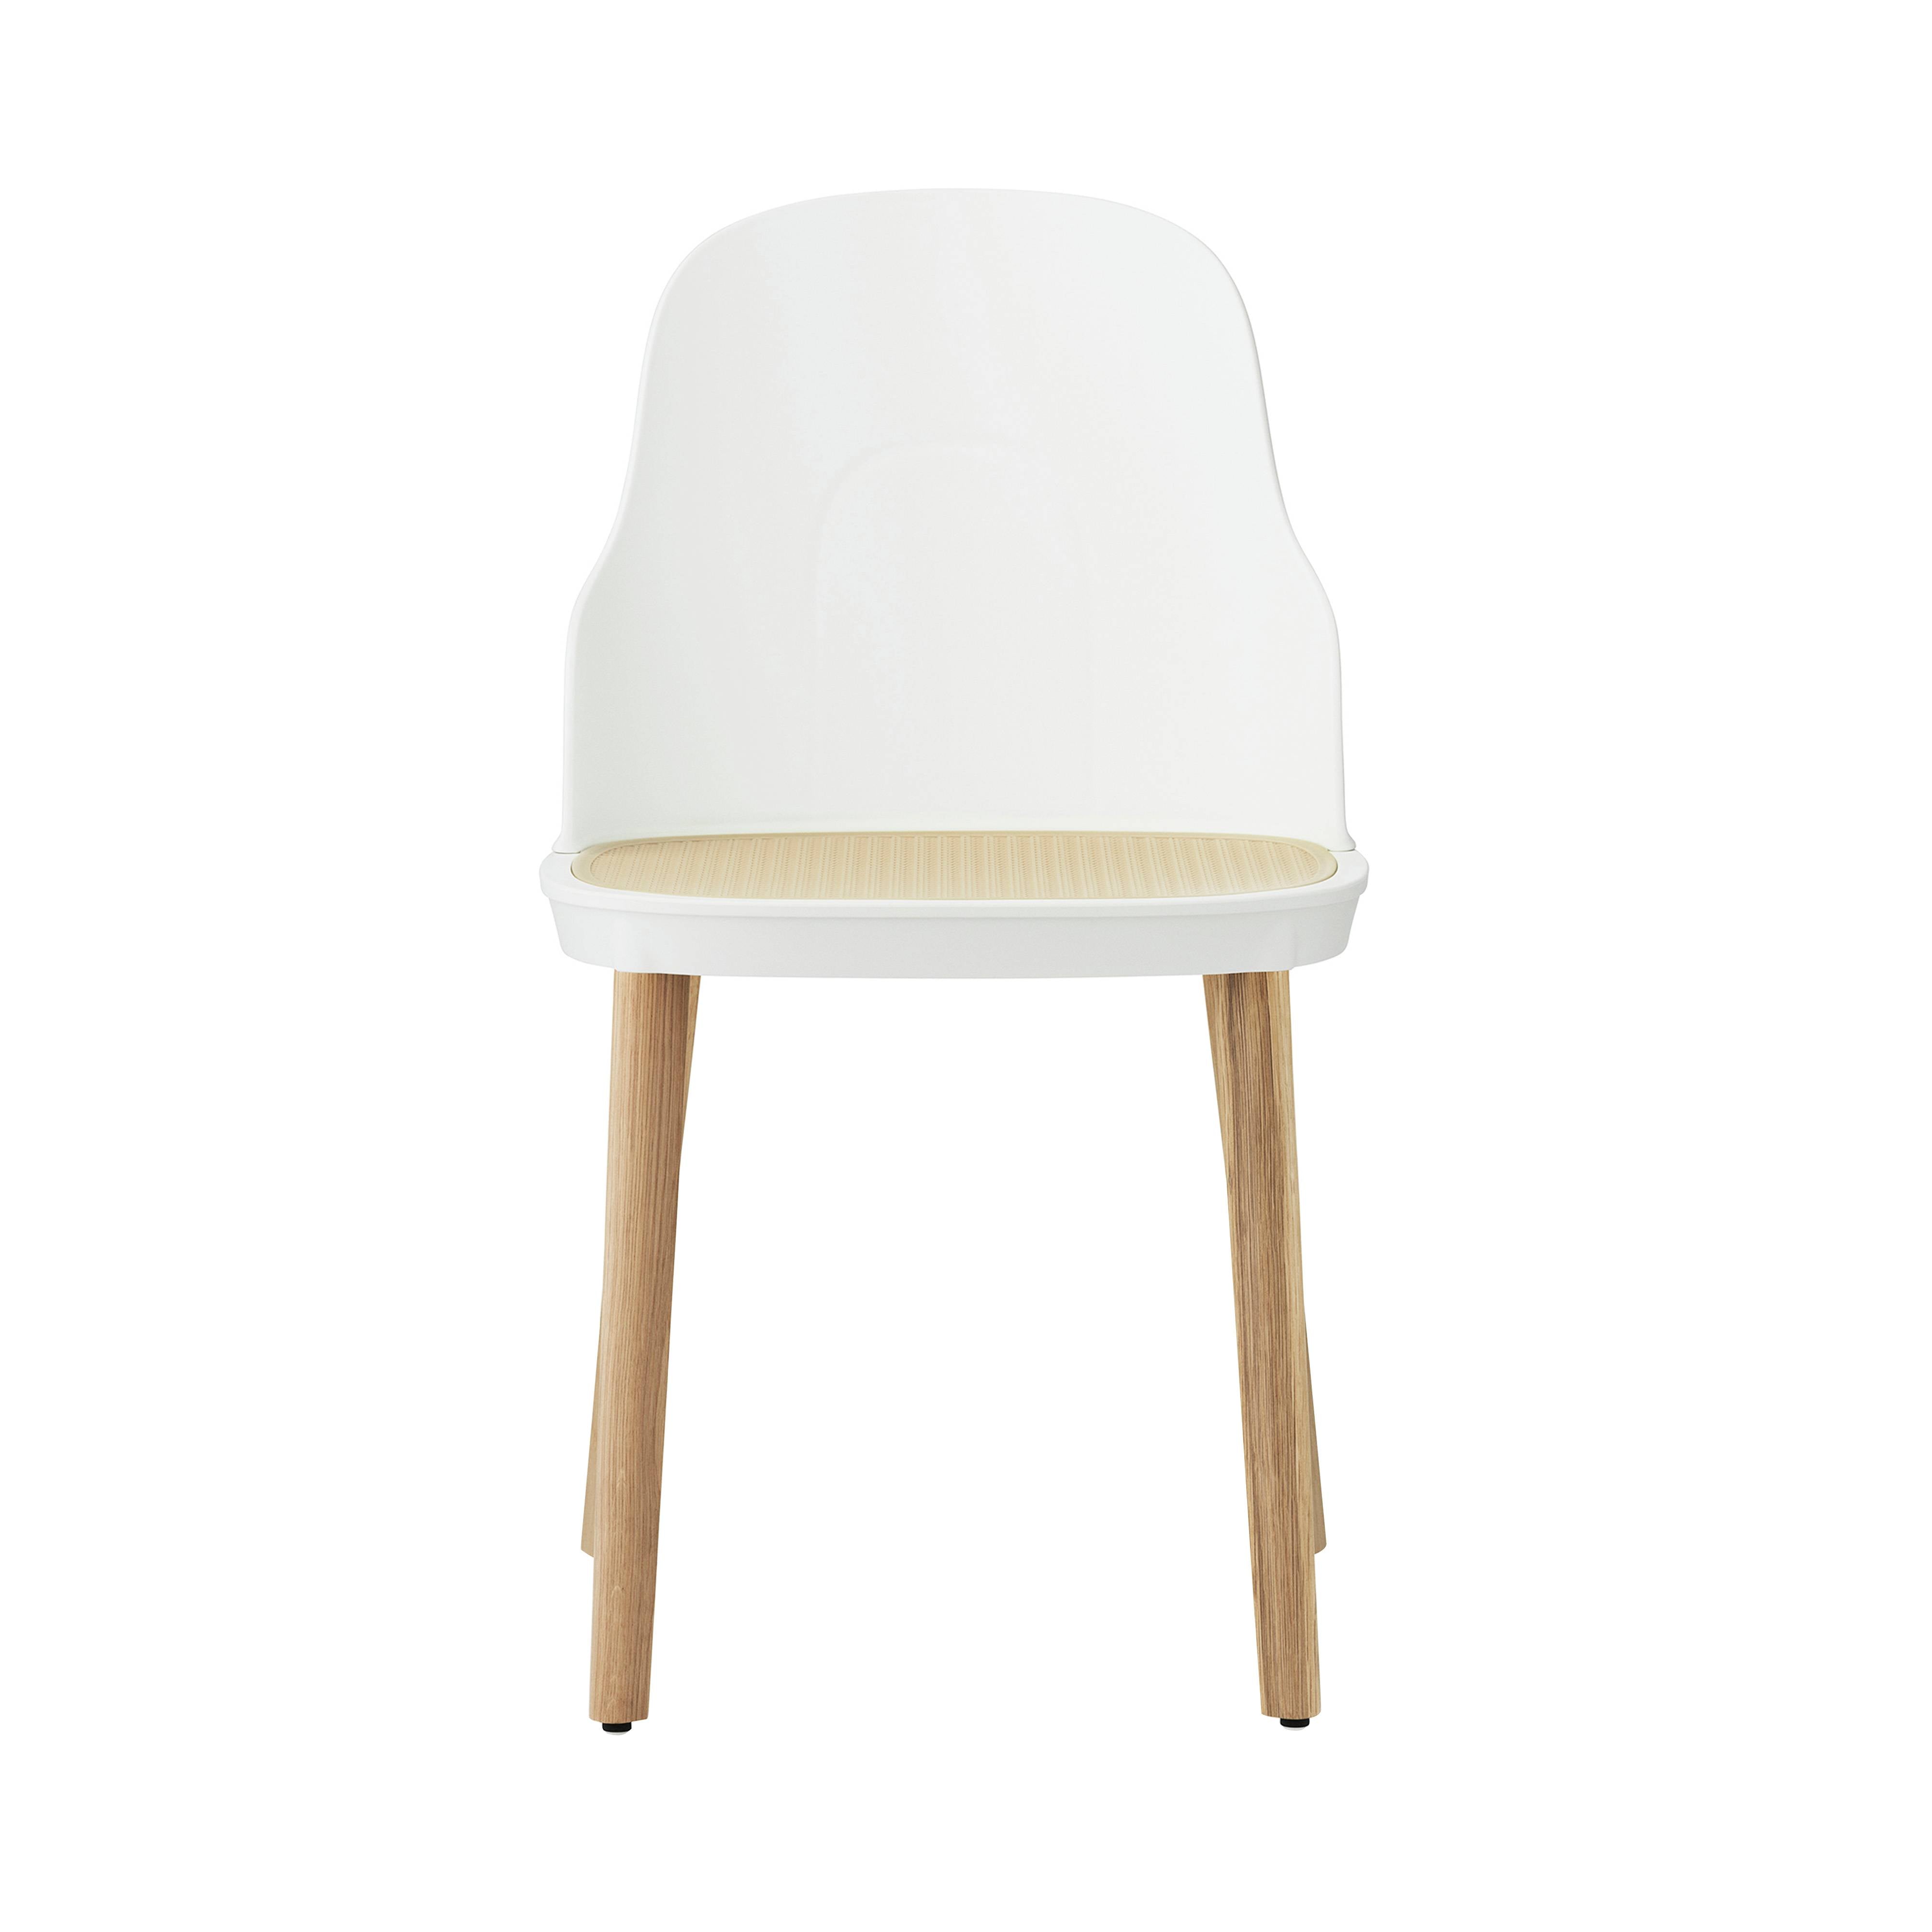 Allez Chair: Molded Wicker + White + Oak